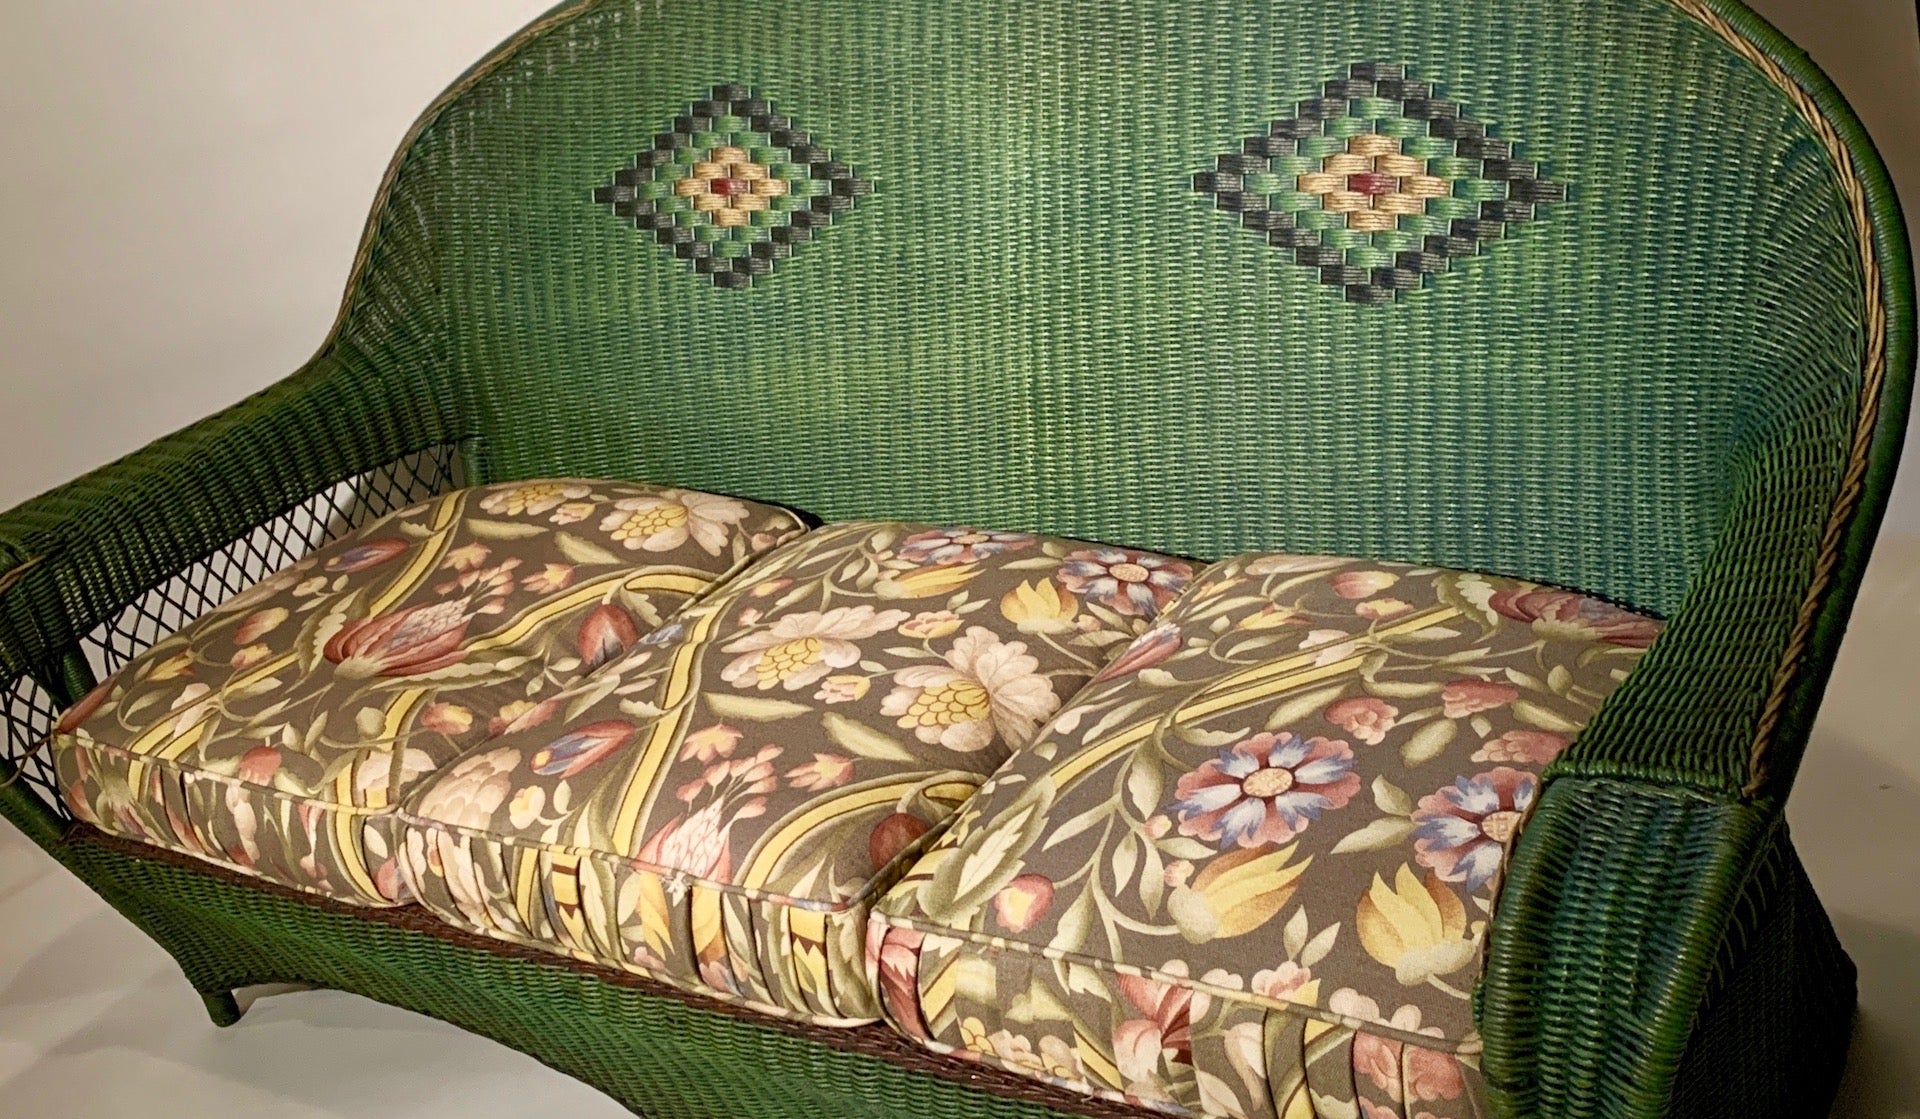 Magnifique canapé en osier antique à trois places, de style Arte Antiques, en excellent état. Il est attribué à la Karpen Furniture Company de Chicago, Los Angeles, Michigan City et New York. Ce canapé à six pieds est tissé à la main, avec un